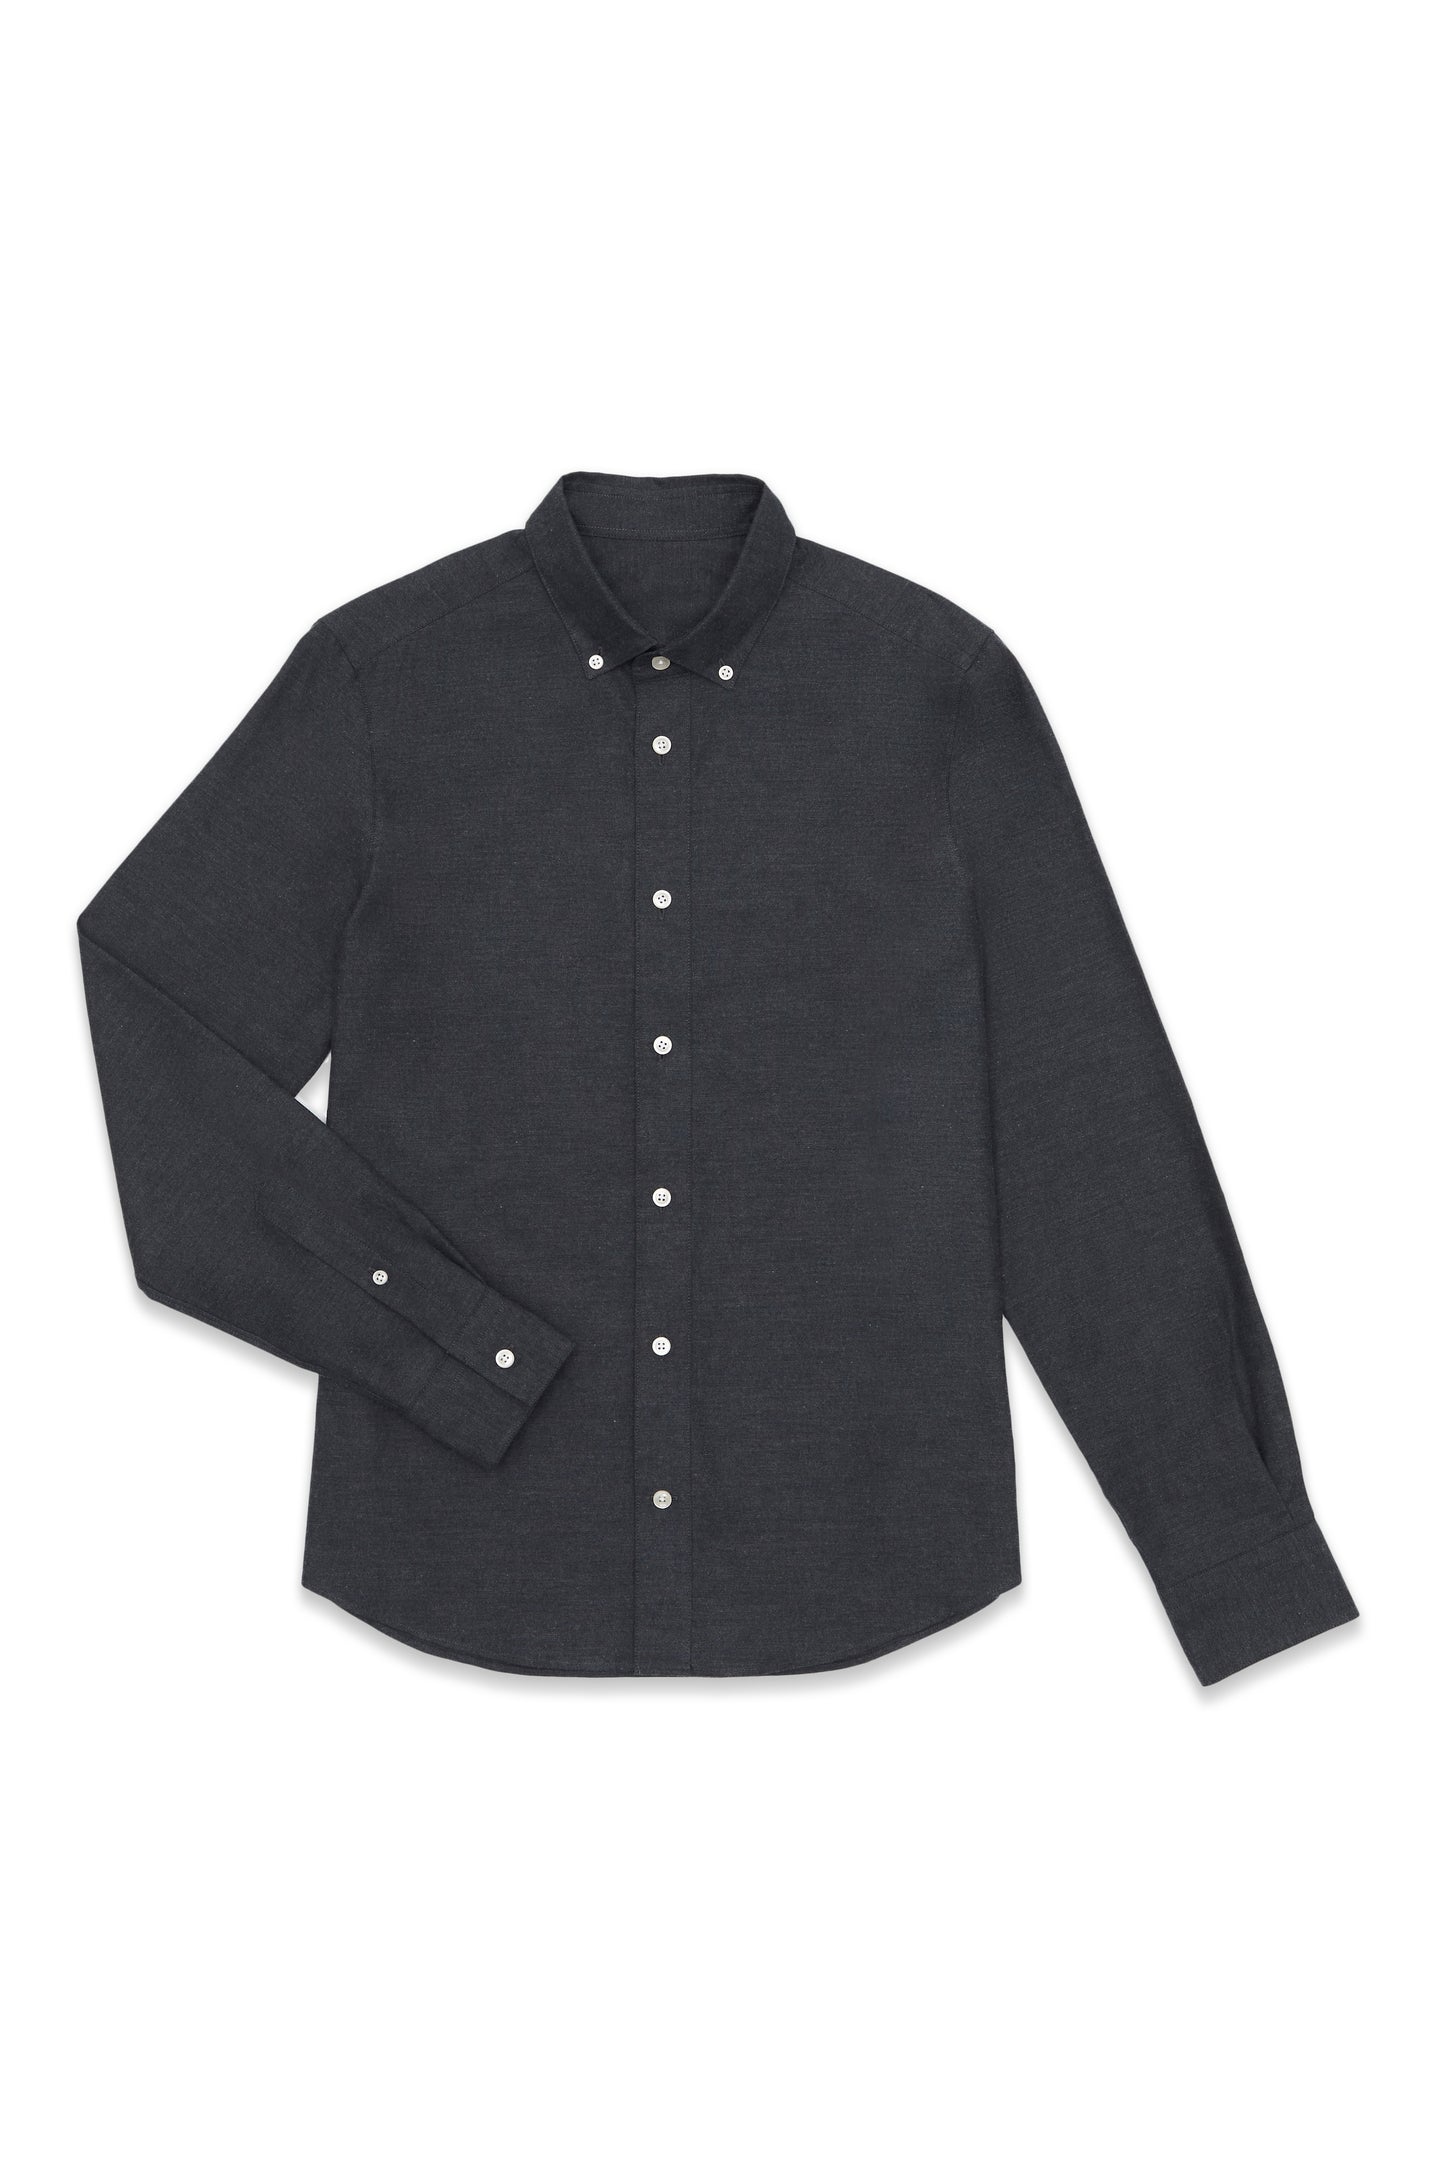 Charcoal Lightweight Flannel Custom Shirt